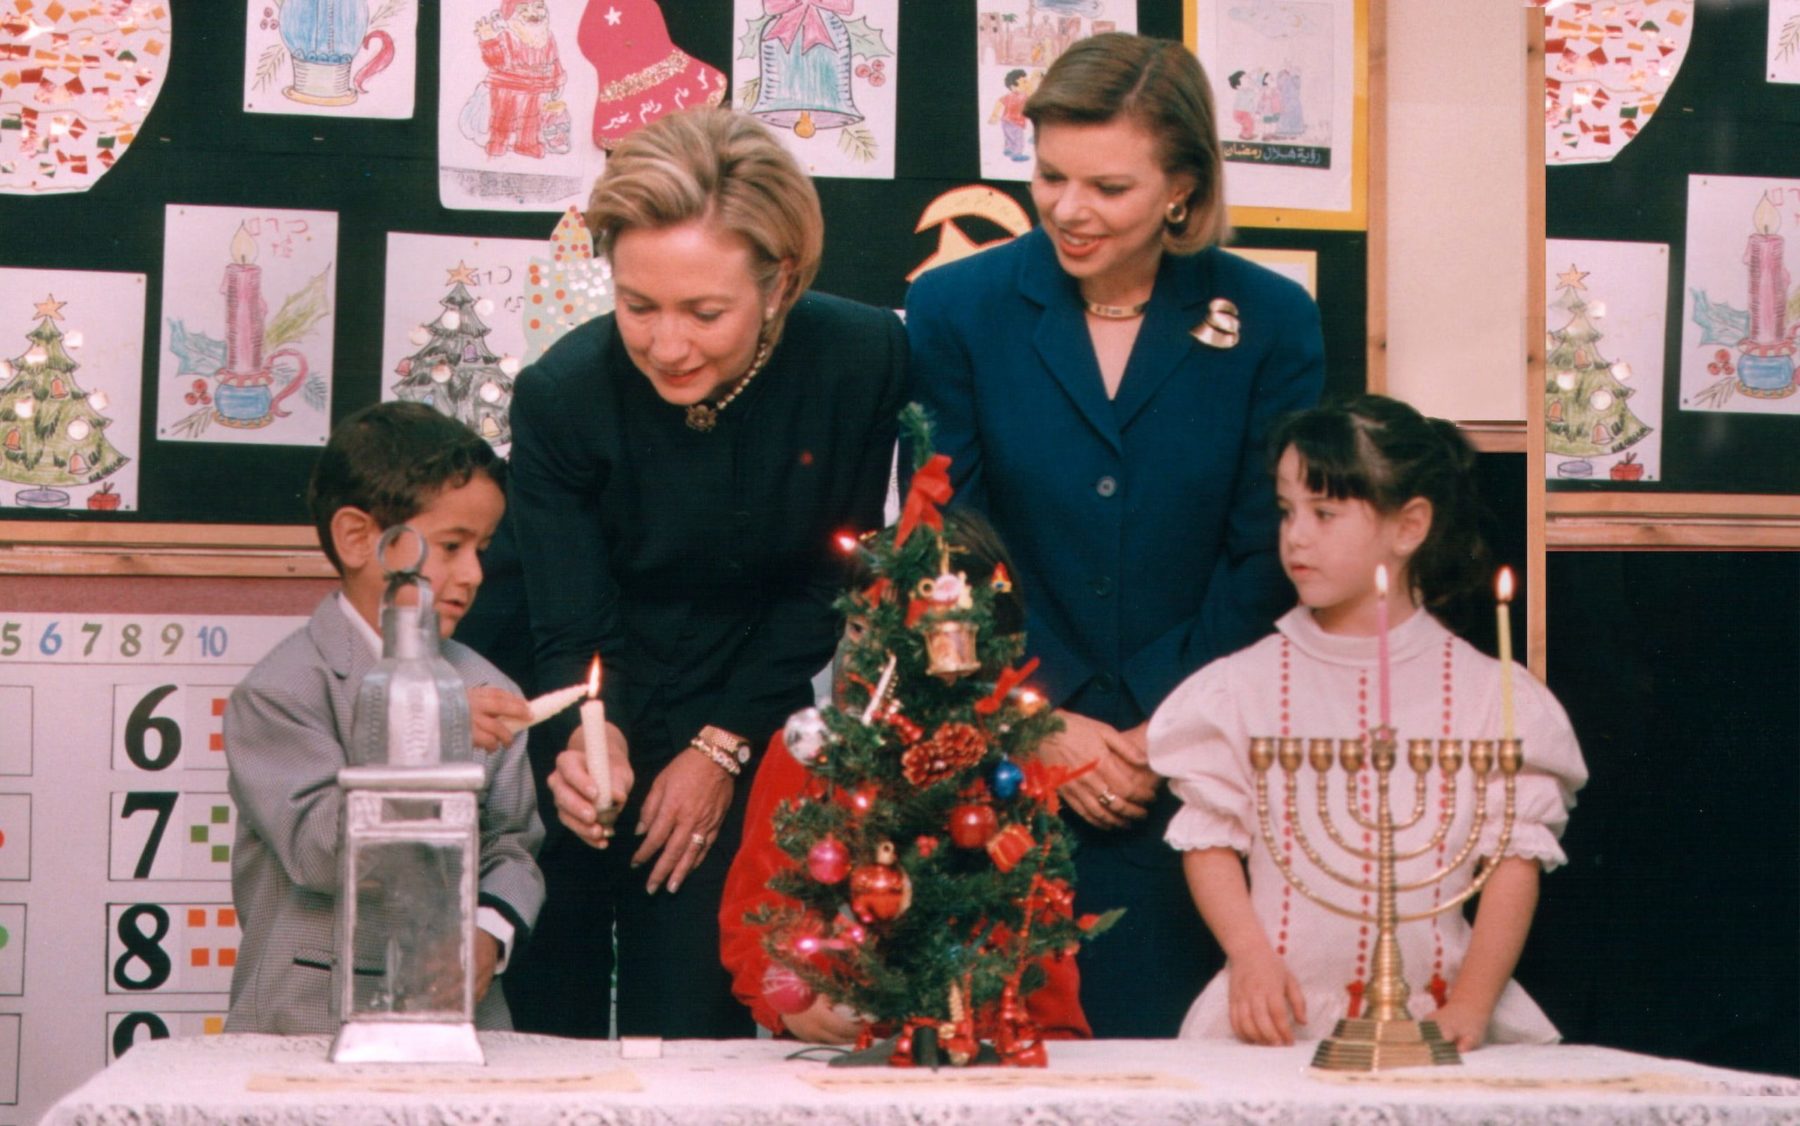 Foto vor einer Wand mit Kinderzeichnungen zu Weihnachten. Ein Junge stehend. zündet eine Kerze an. Zwei Frauen, schick und offiziell gekleidet, schauen ihm dabei zu, ebenso wie ein junges Mädchen, festlich gekleidet hinter einem Chanukkaleuchter stehend.